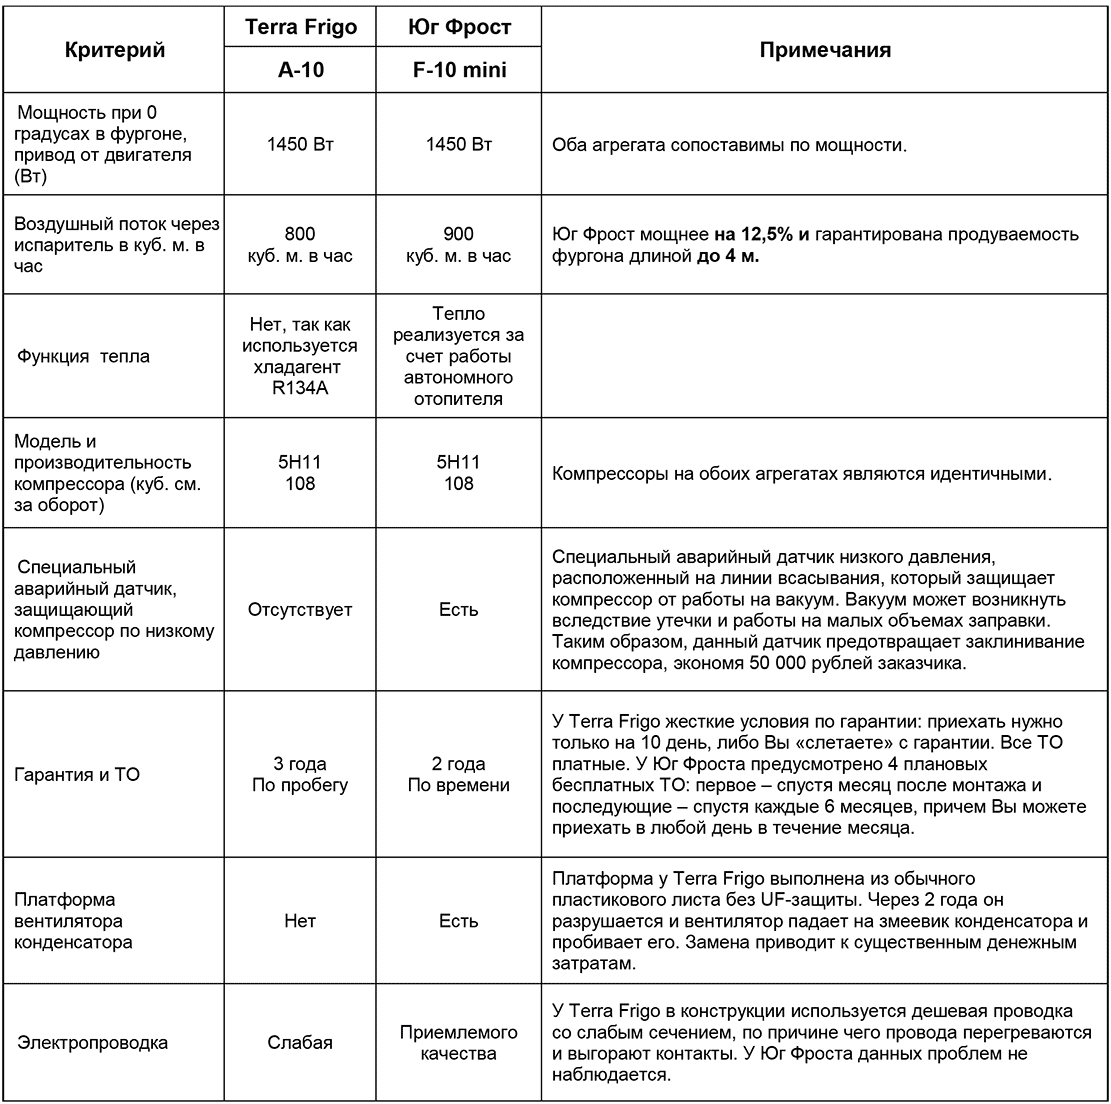 Сравнение рефрижераторов Юг Фрост F-10 (mini) и Терра Фриго А-10